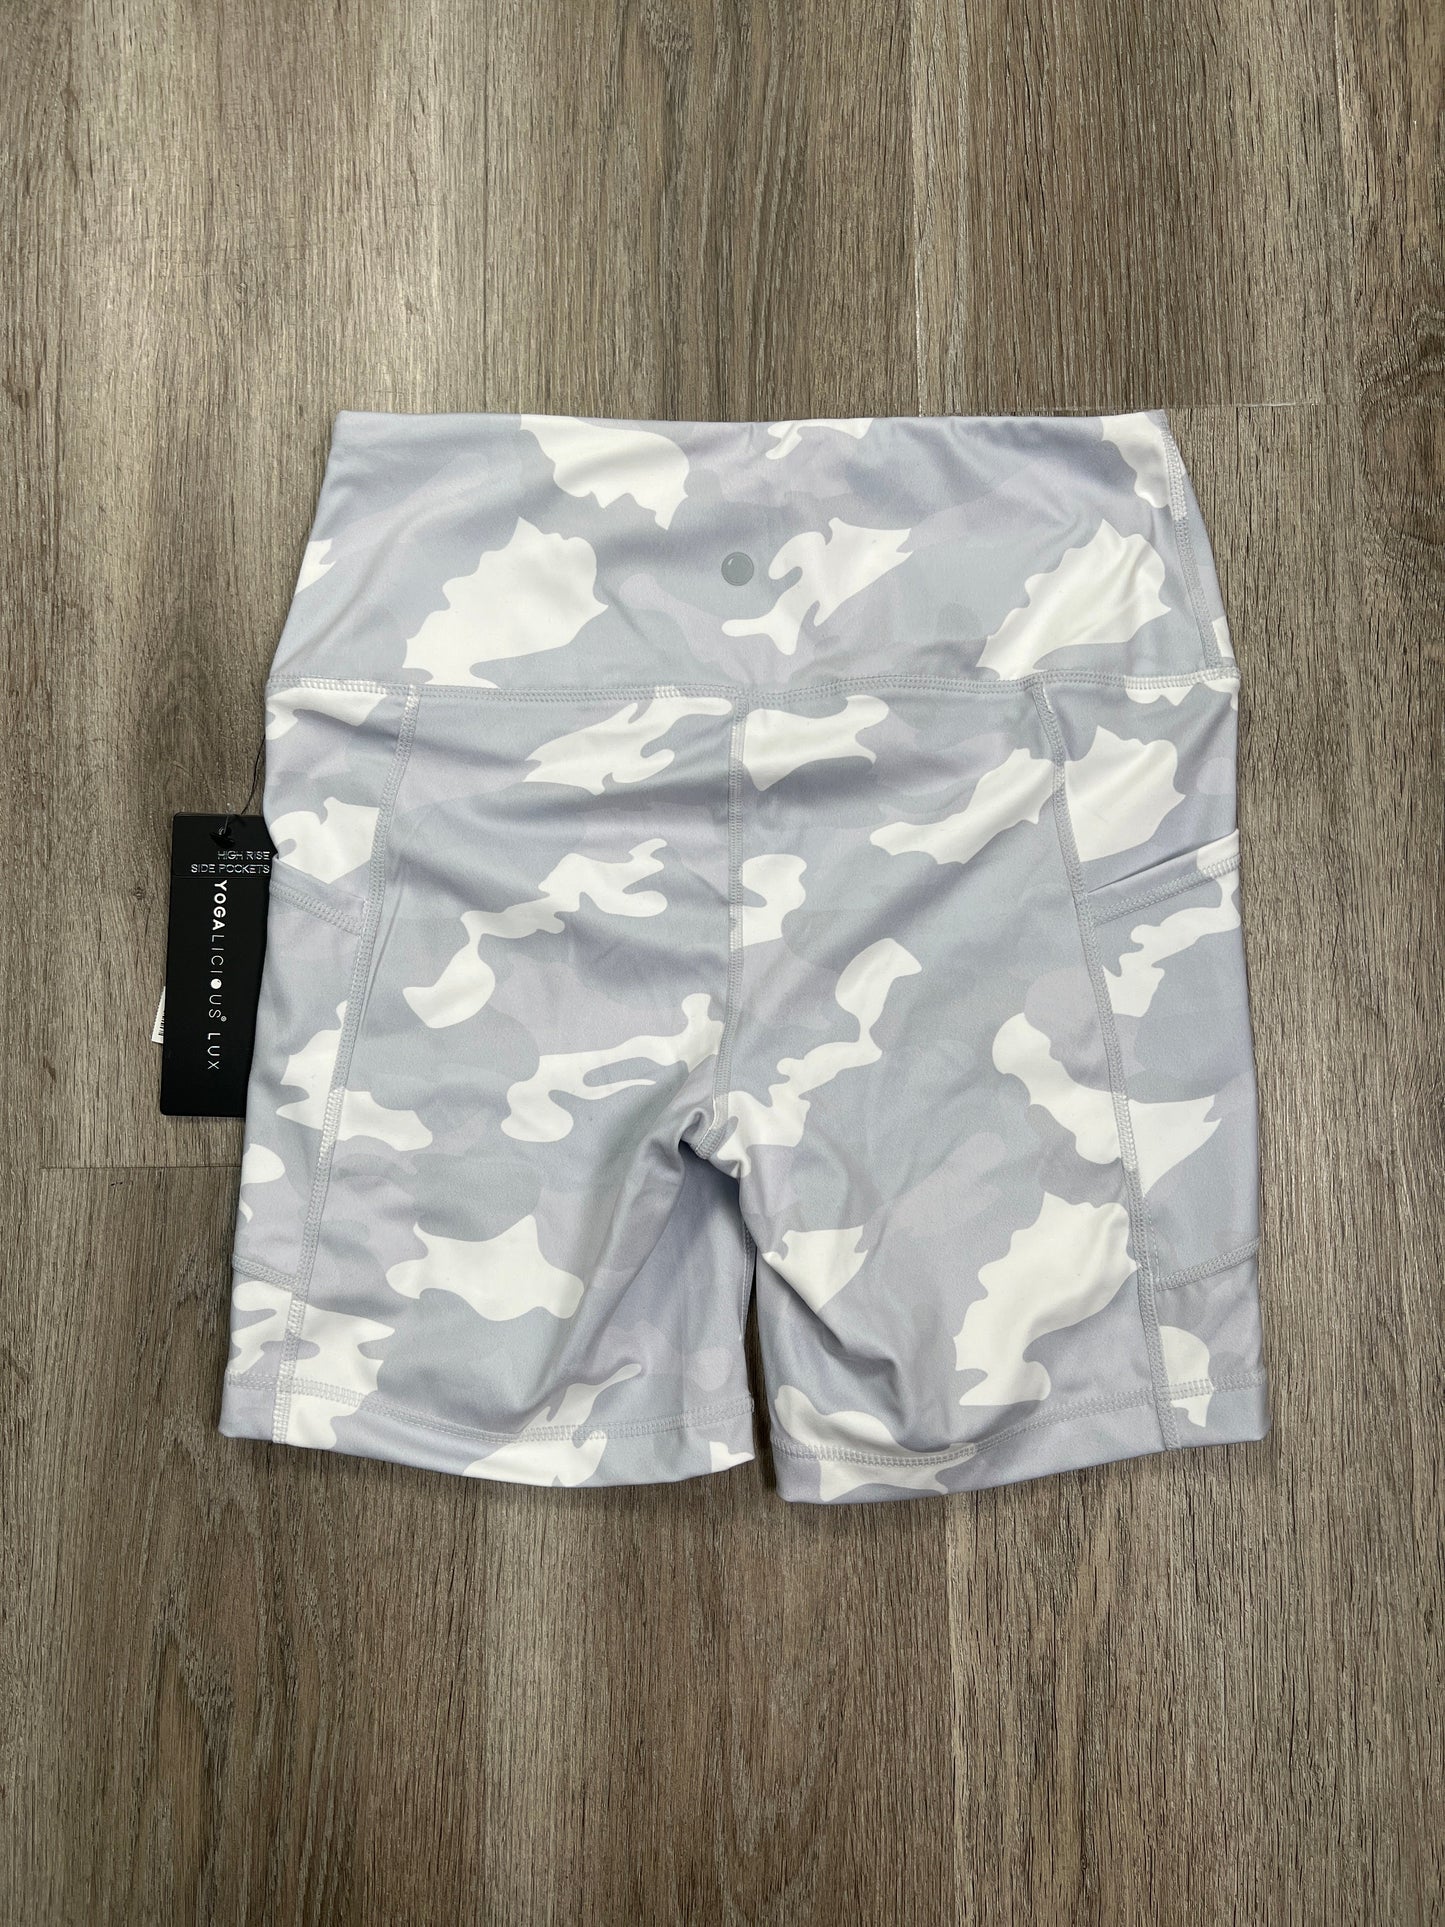 Grey Athletic Shorts Yogalicious, Size S